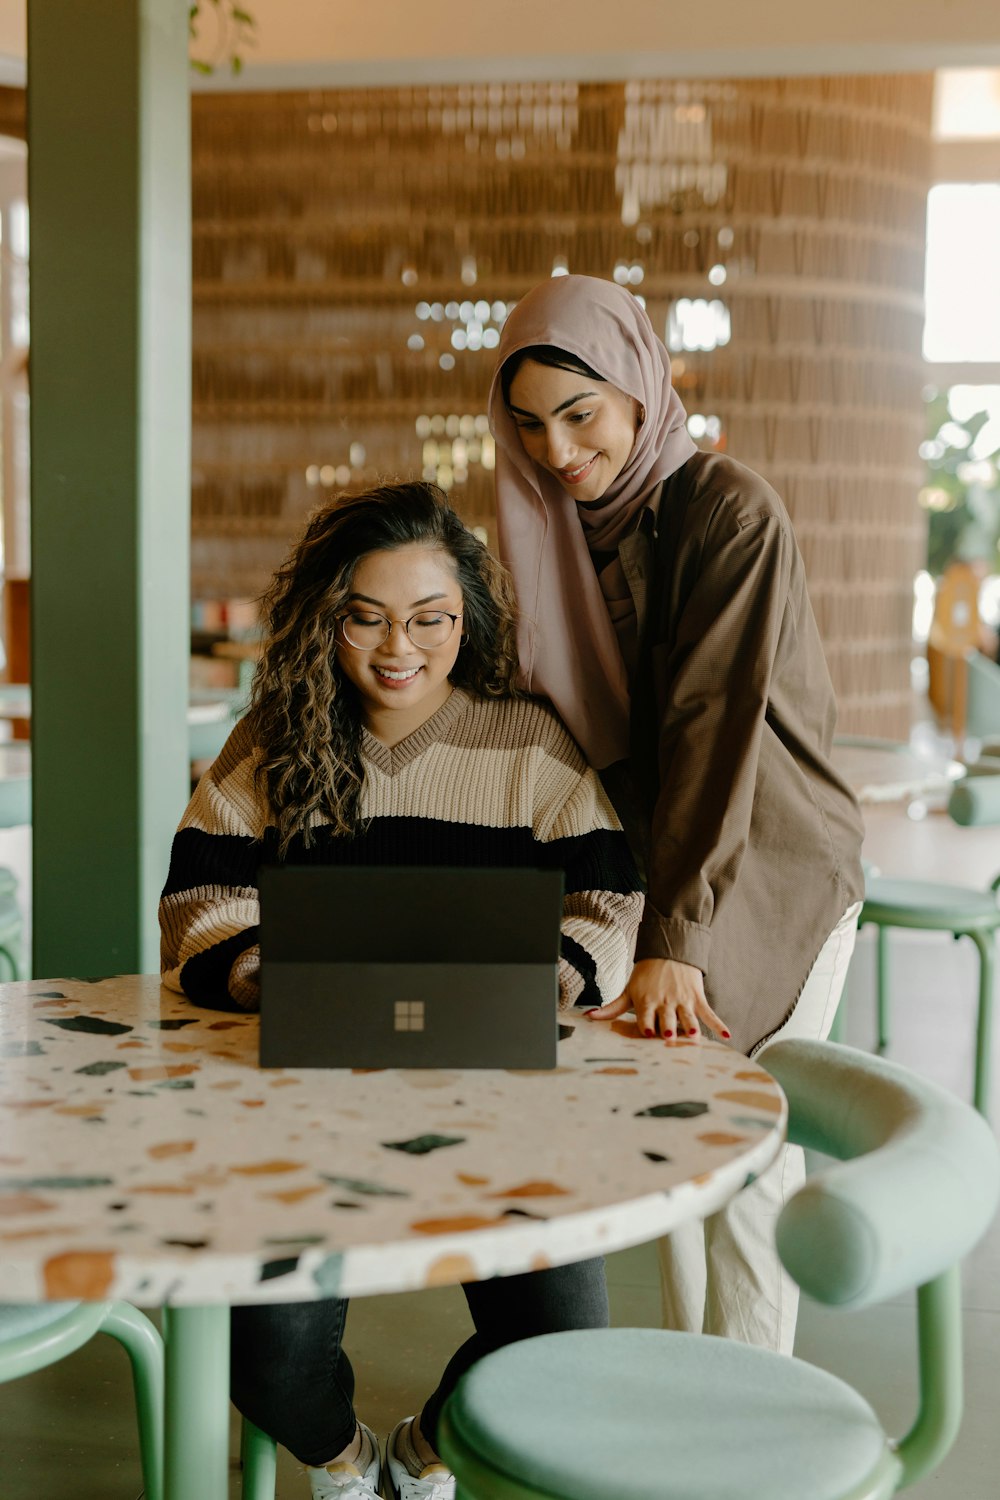 Eine Frau und ein Mädchen schauen auf einen Laptop